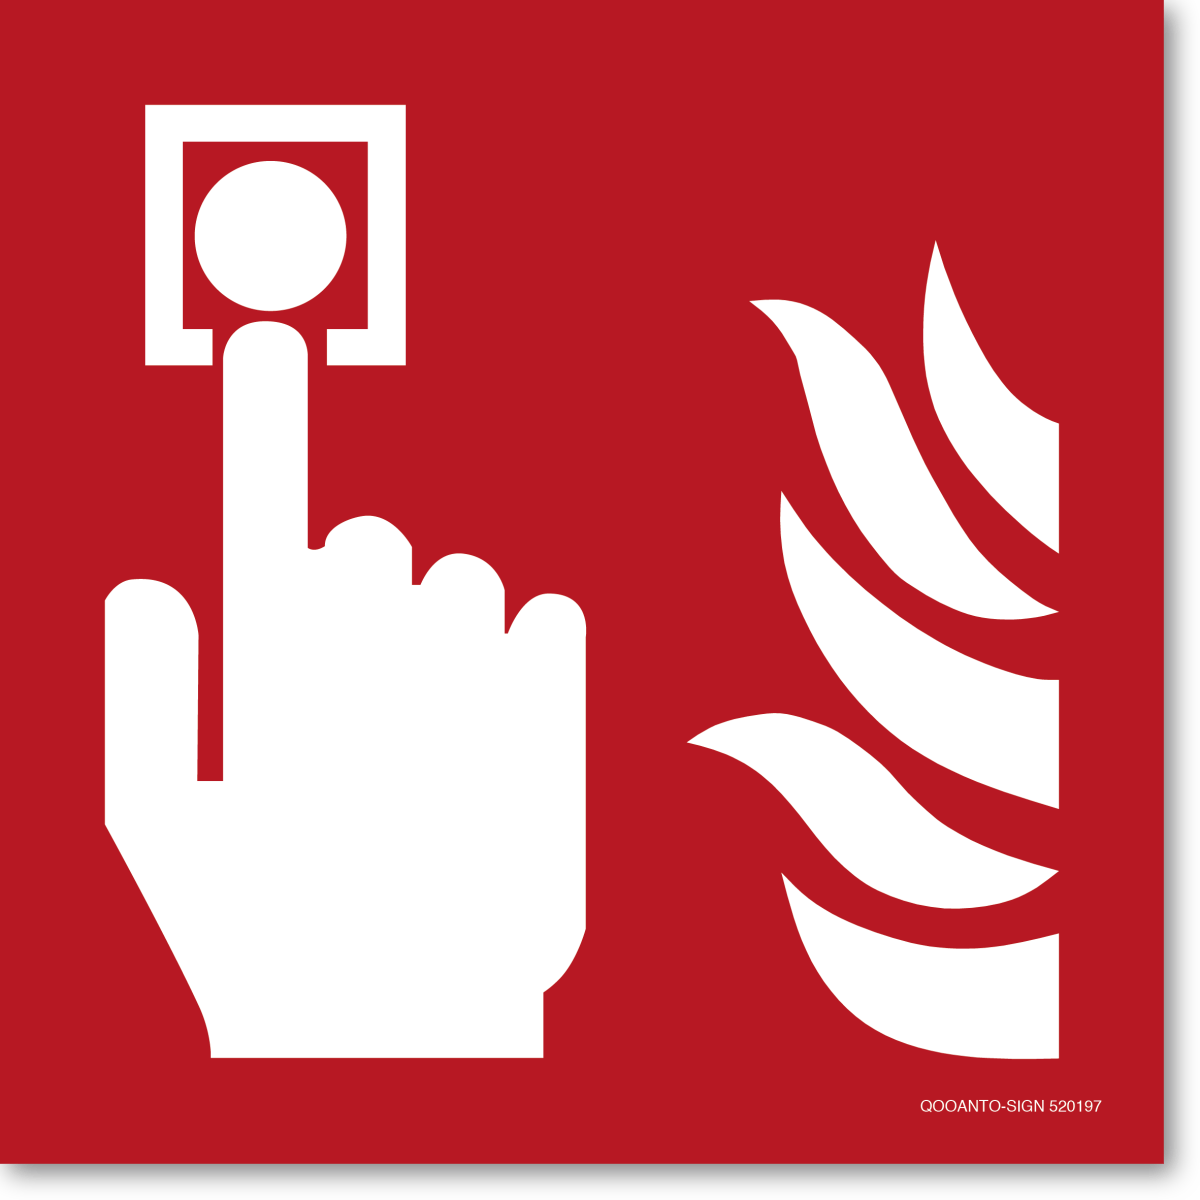 Brandmelder, EN ISO 7010, F005 Brandschutzschild oder Aufkleber aus Alu-Verbund oder Selbstklebefolie mit UV-Schutz - QOOANTO-SIGN